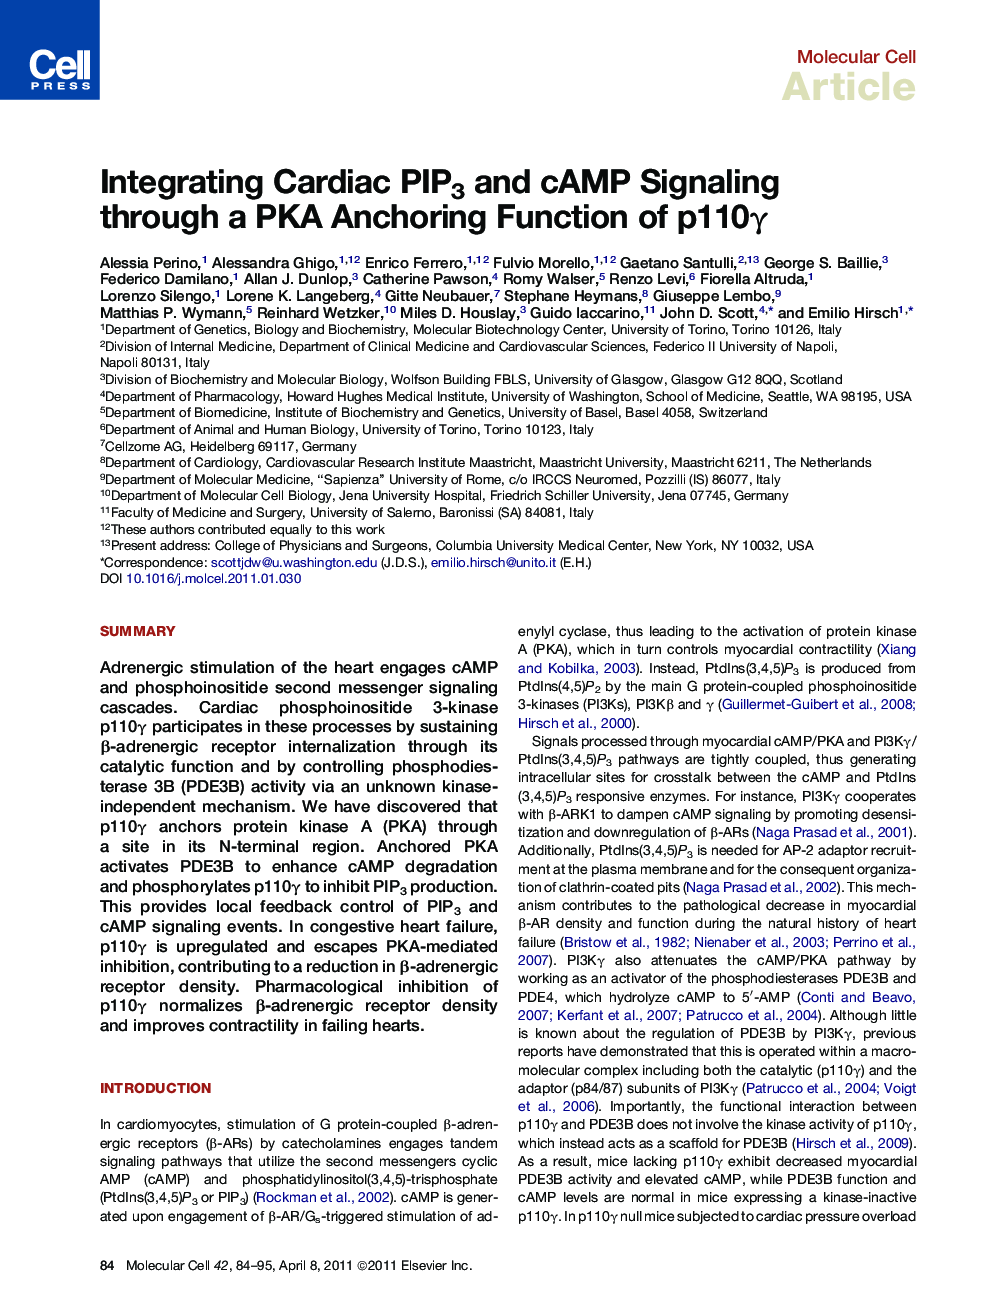 Integrating Cardiac PIP3 and cAMP Signaling through a PKA Anchoring Function of p110γ